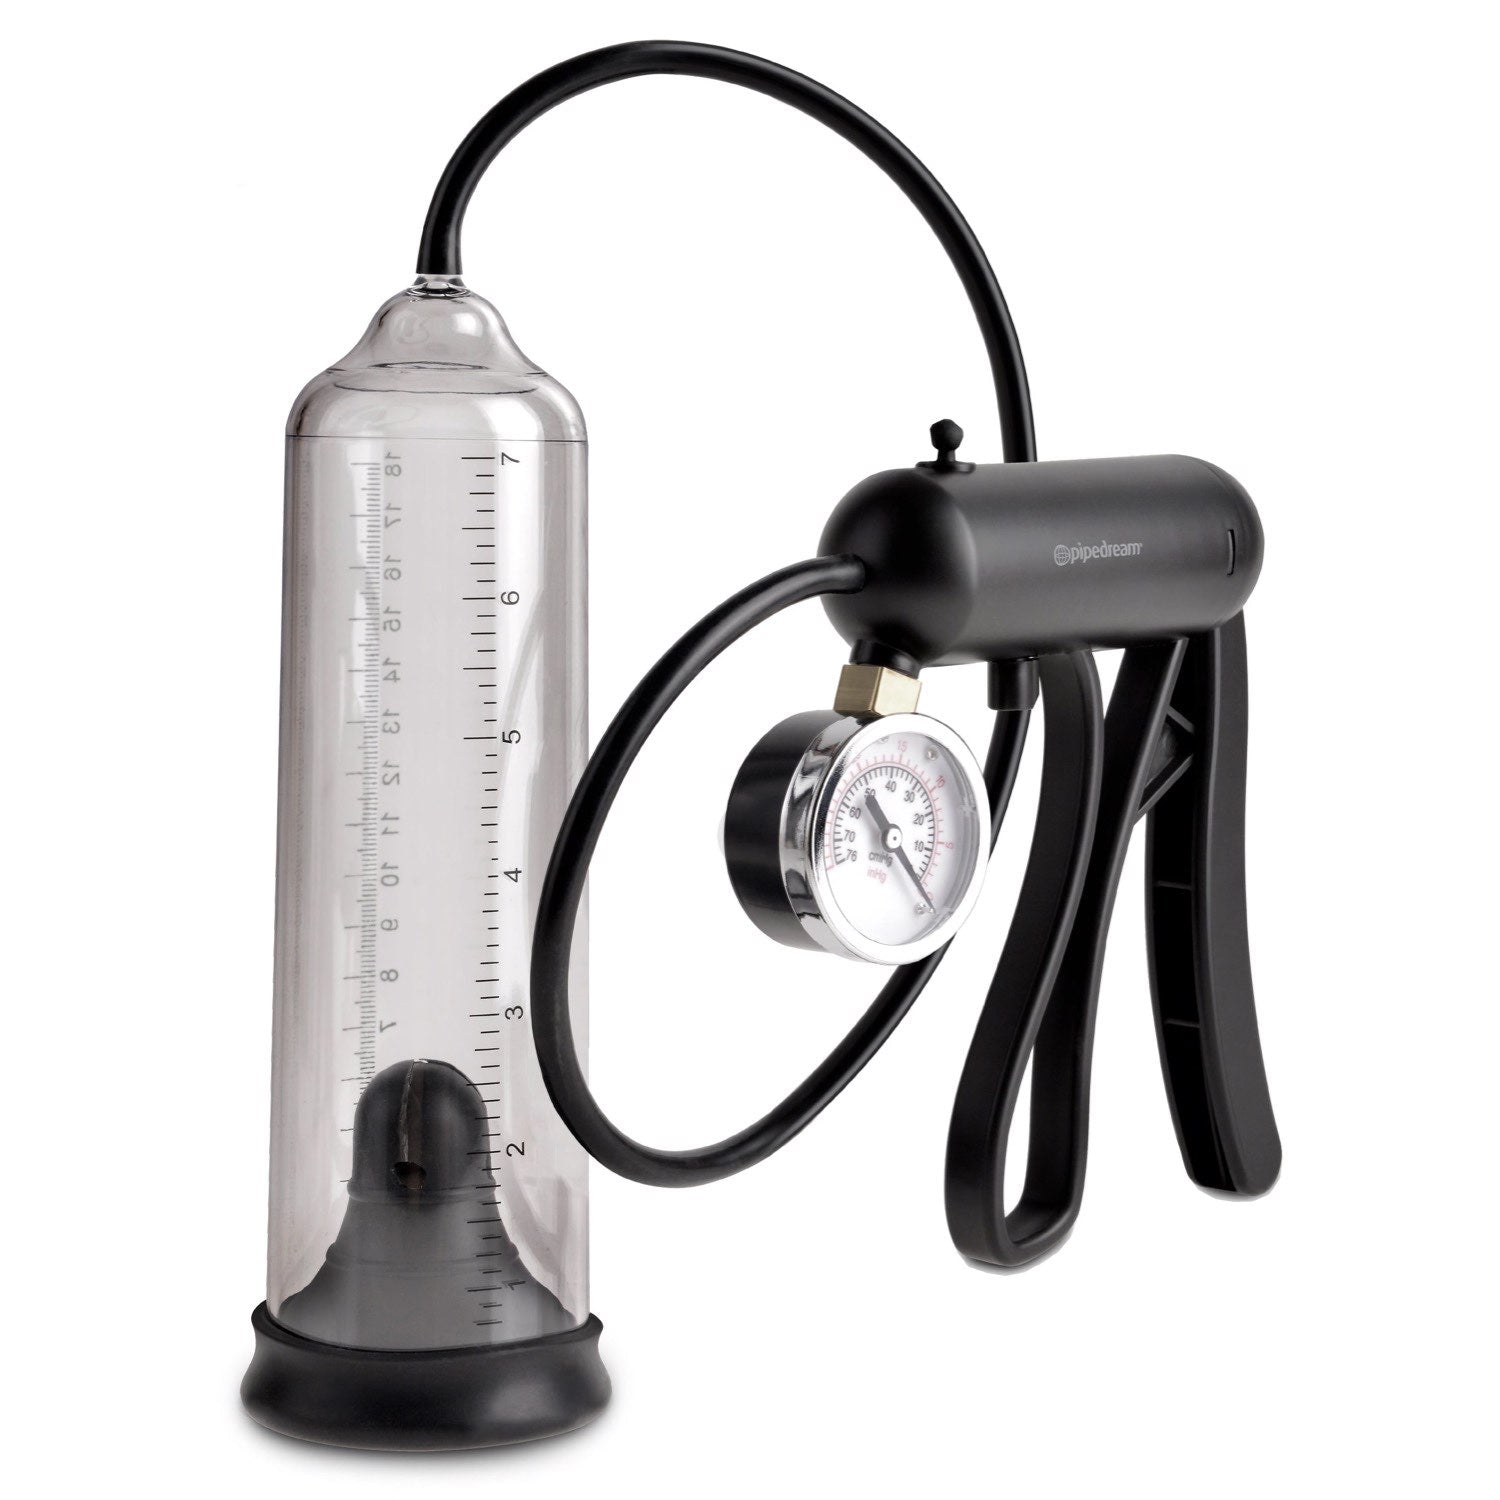 泵沃克斯 Pro-Gauge 动力泵 - 带手动触发器的透明阴茎泵 by Pipedream